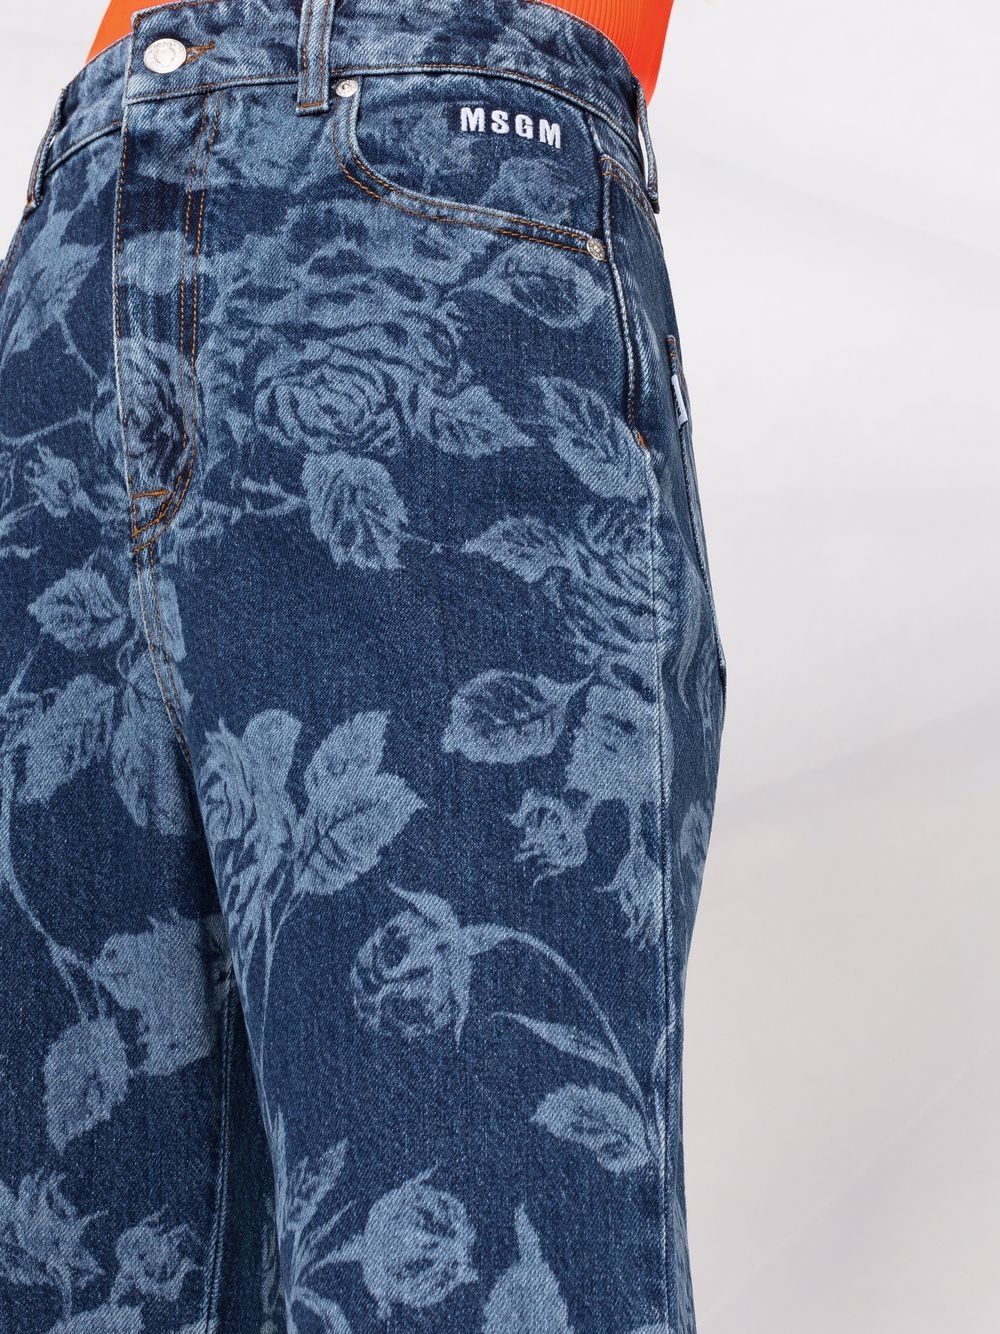 фото Msgm расклешенные джинсы с цветочным принтом